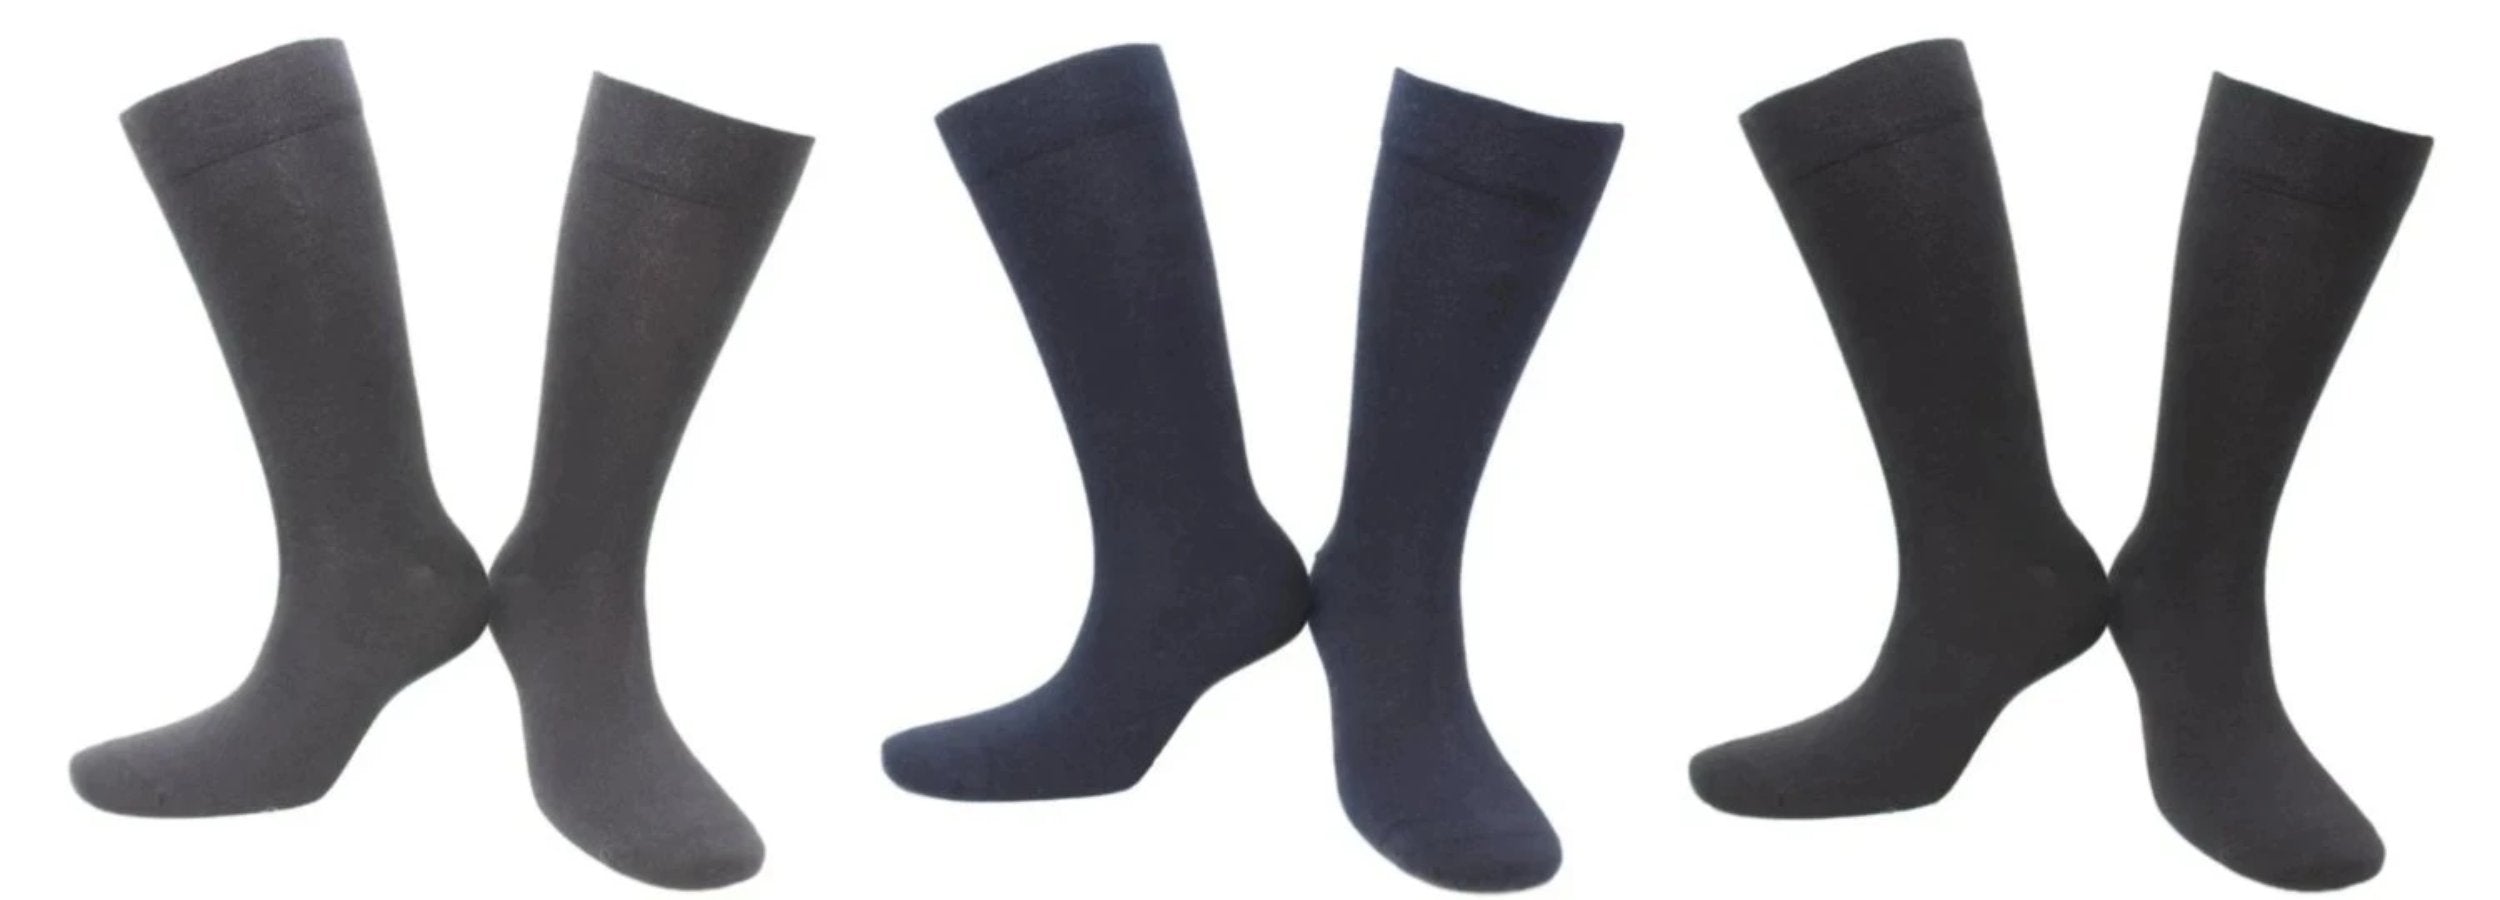 5 Paires de Chaussettes Coton Homme Femme Noire Bleue Grise 39-42 ou 43-46